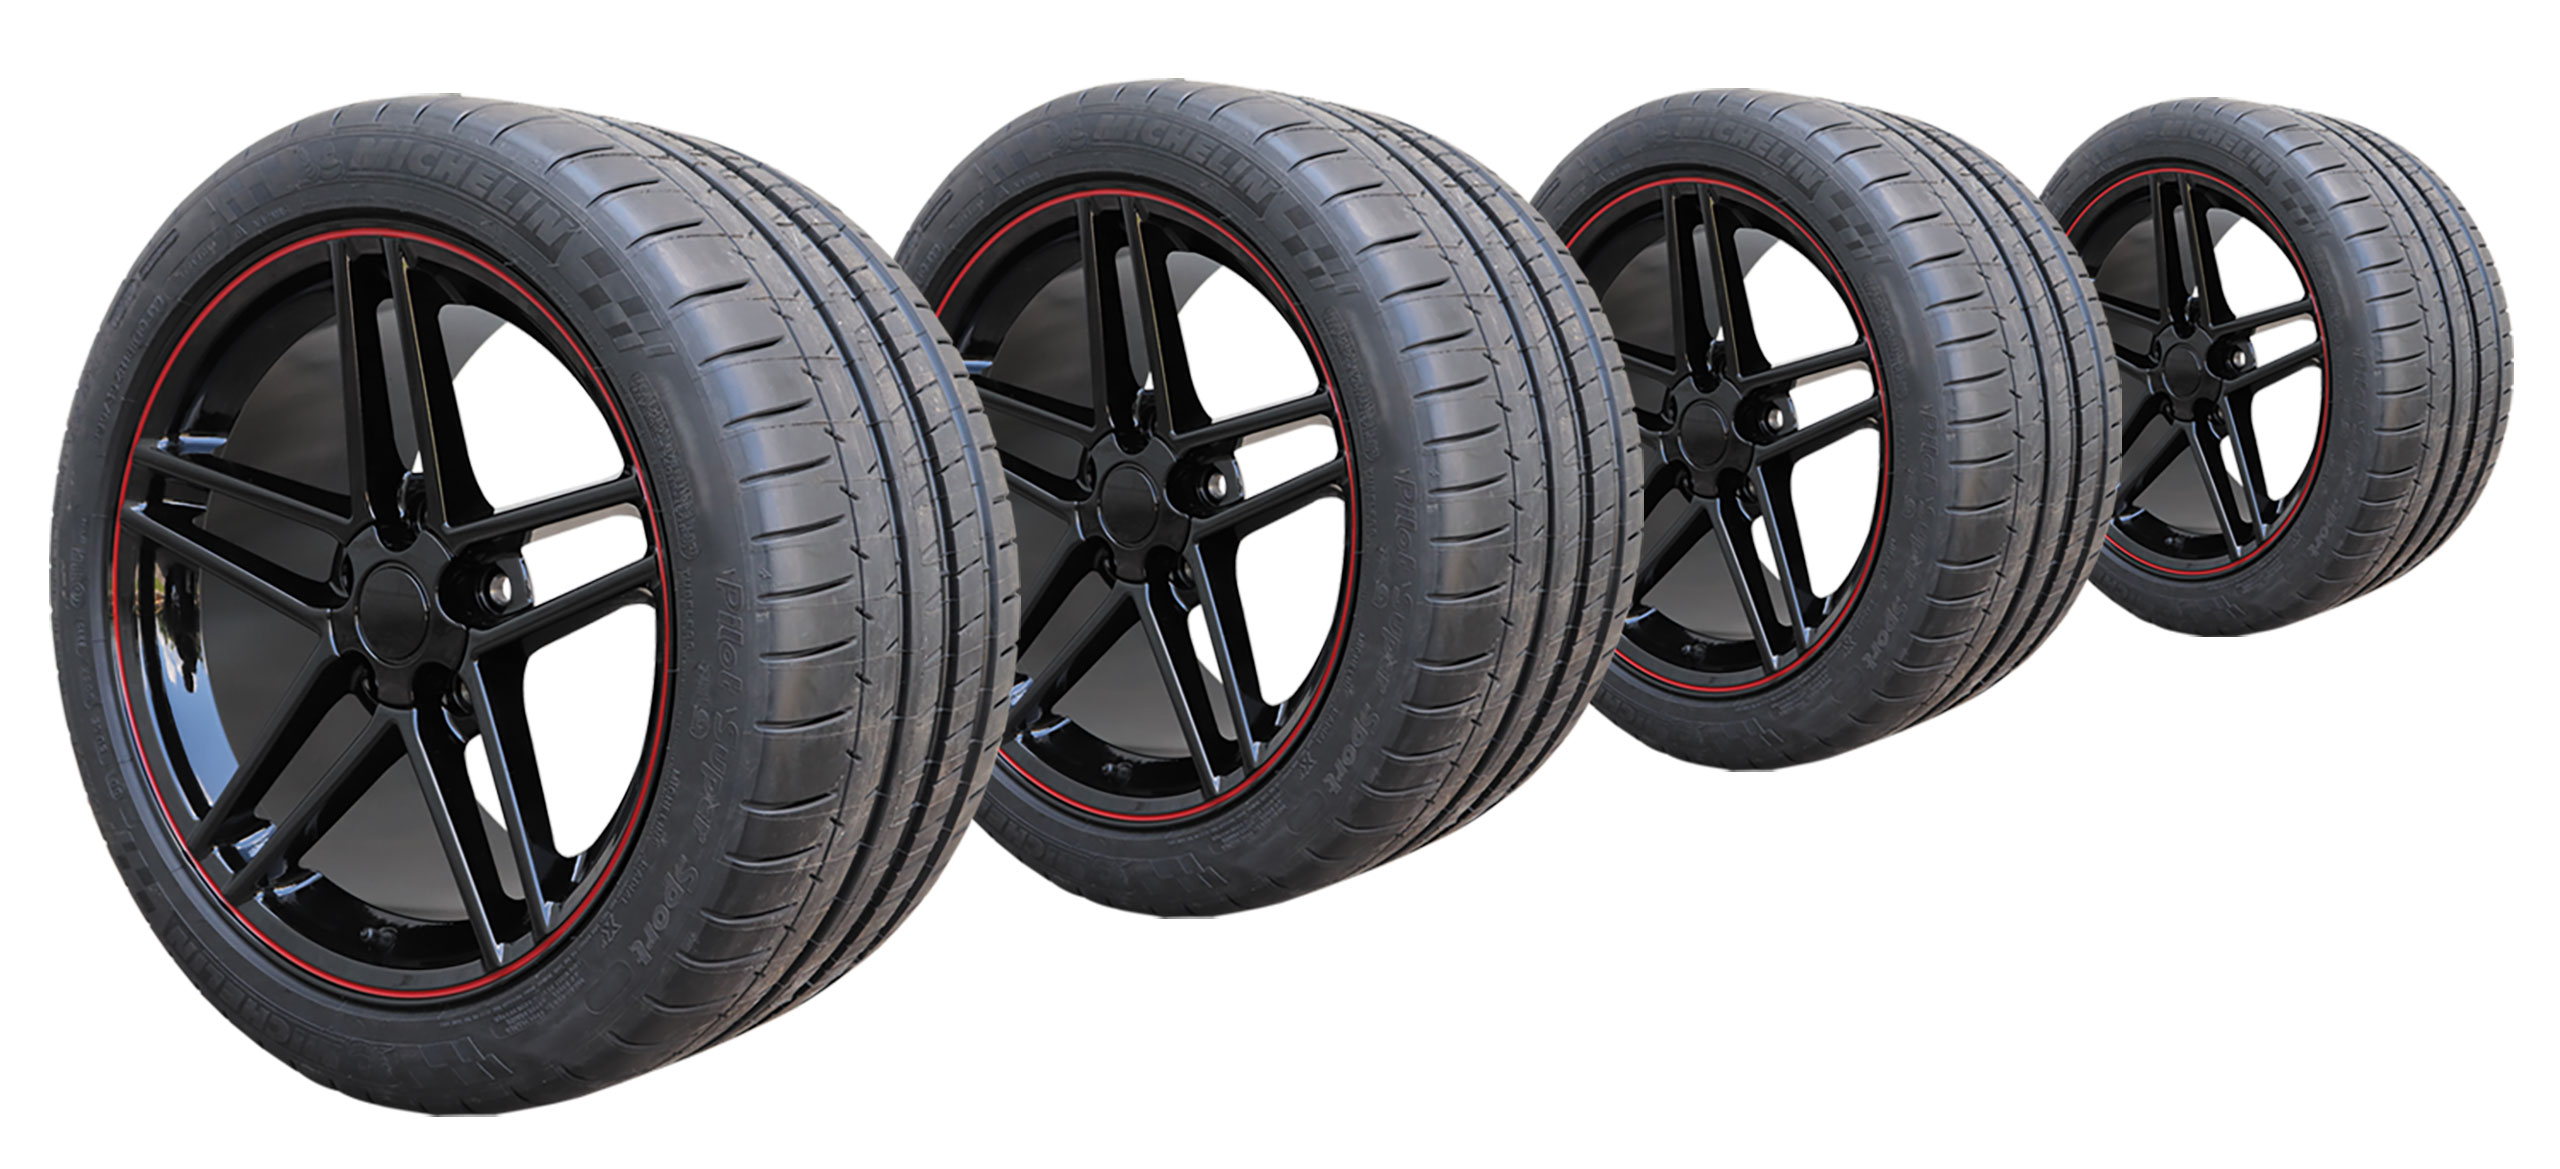 57124 Tire/Wheel Pkg C6 Z06 Split 5 Spoke Gloss Blk W/Red Stripe On Michelin Tires For 05-13 Corvette